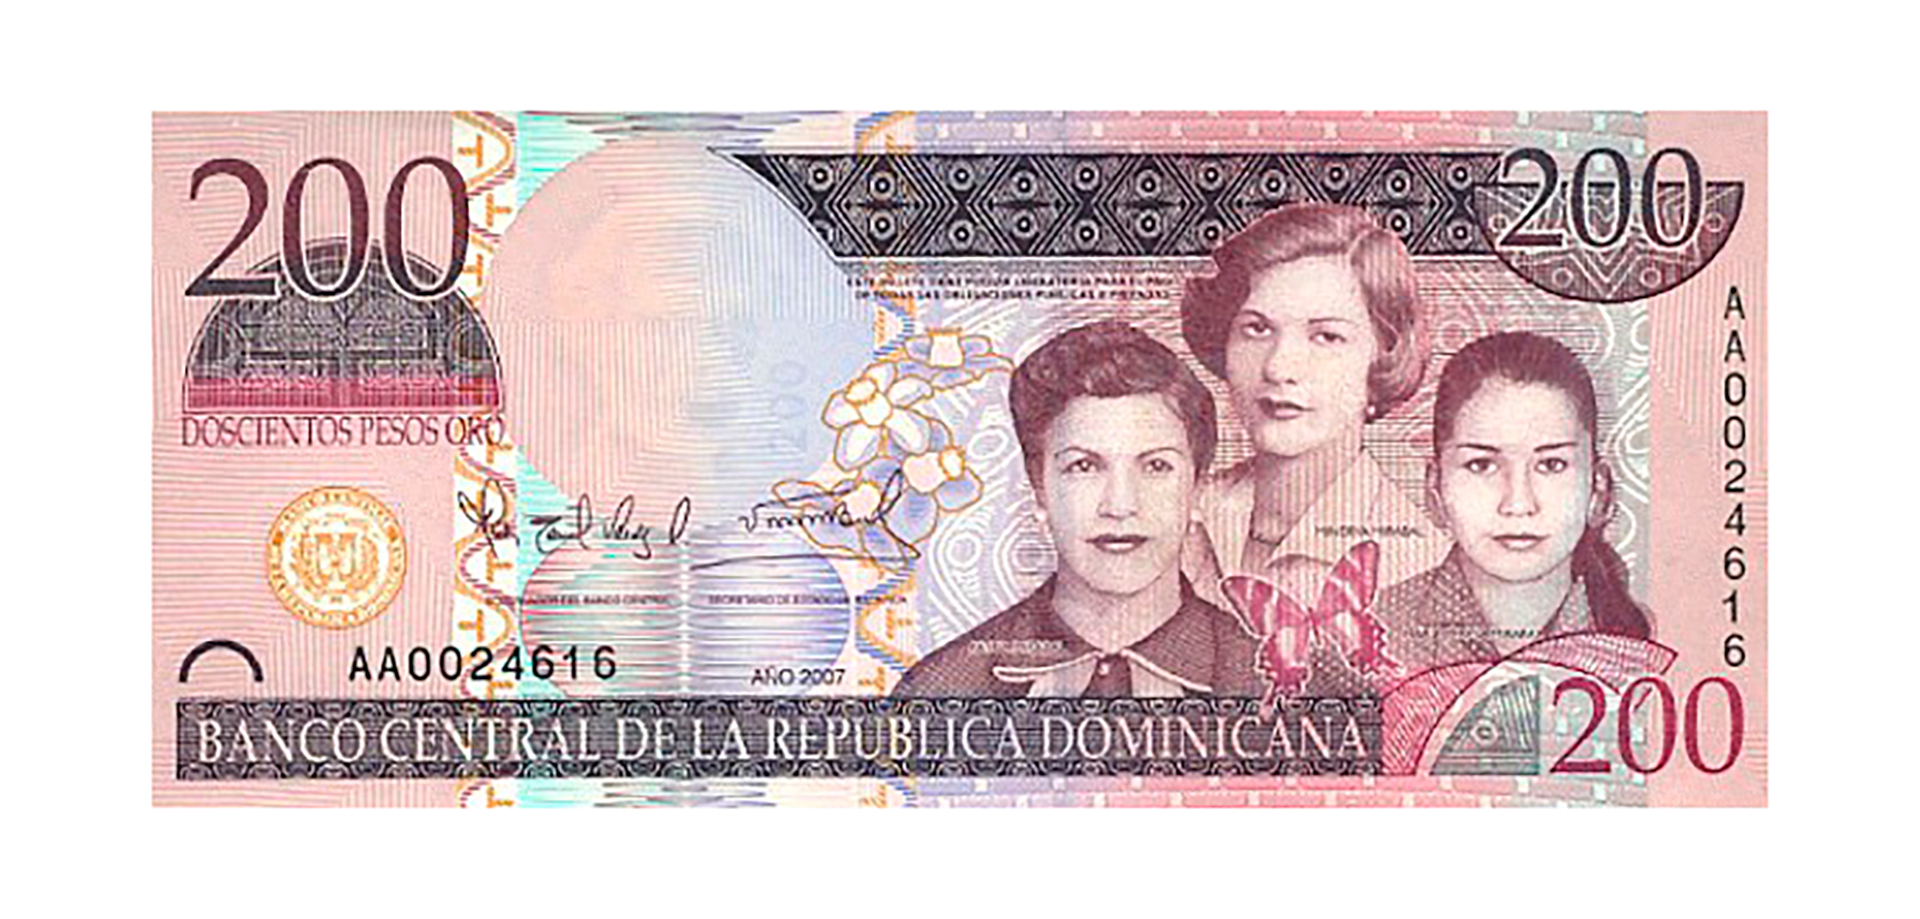 En los billetes domincanos: uno de los reconocimientos a las hermanas que lucharon contra el régimen de Trujillo